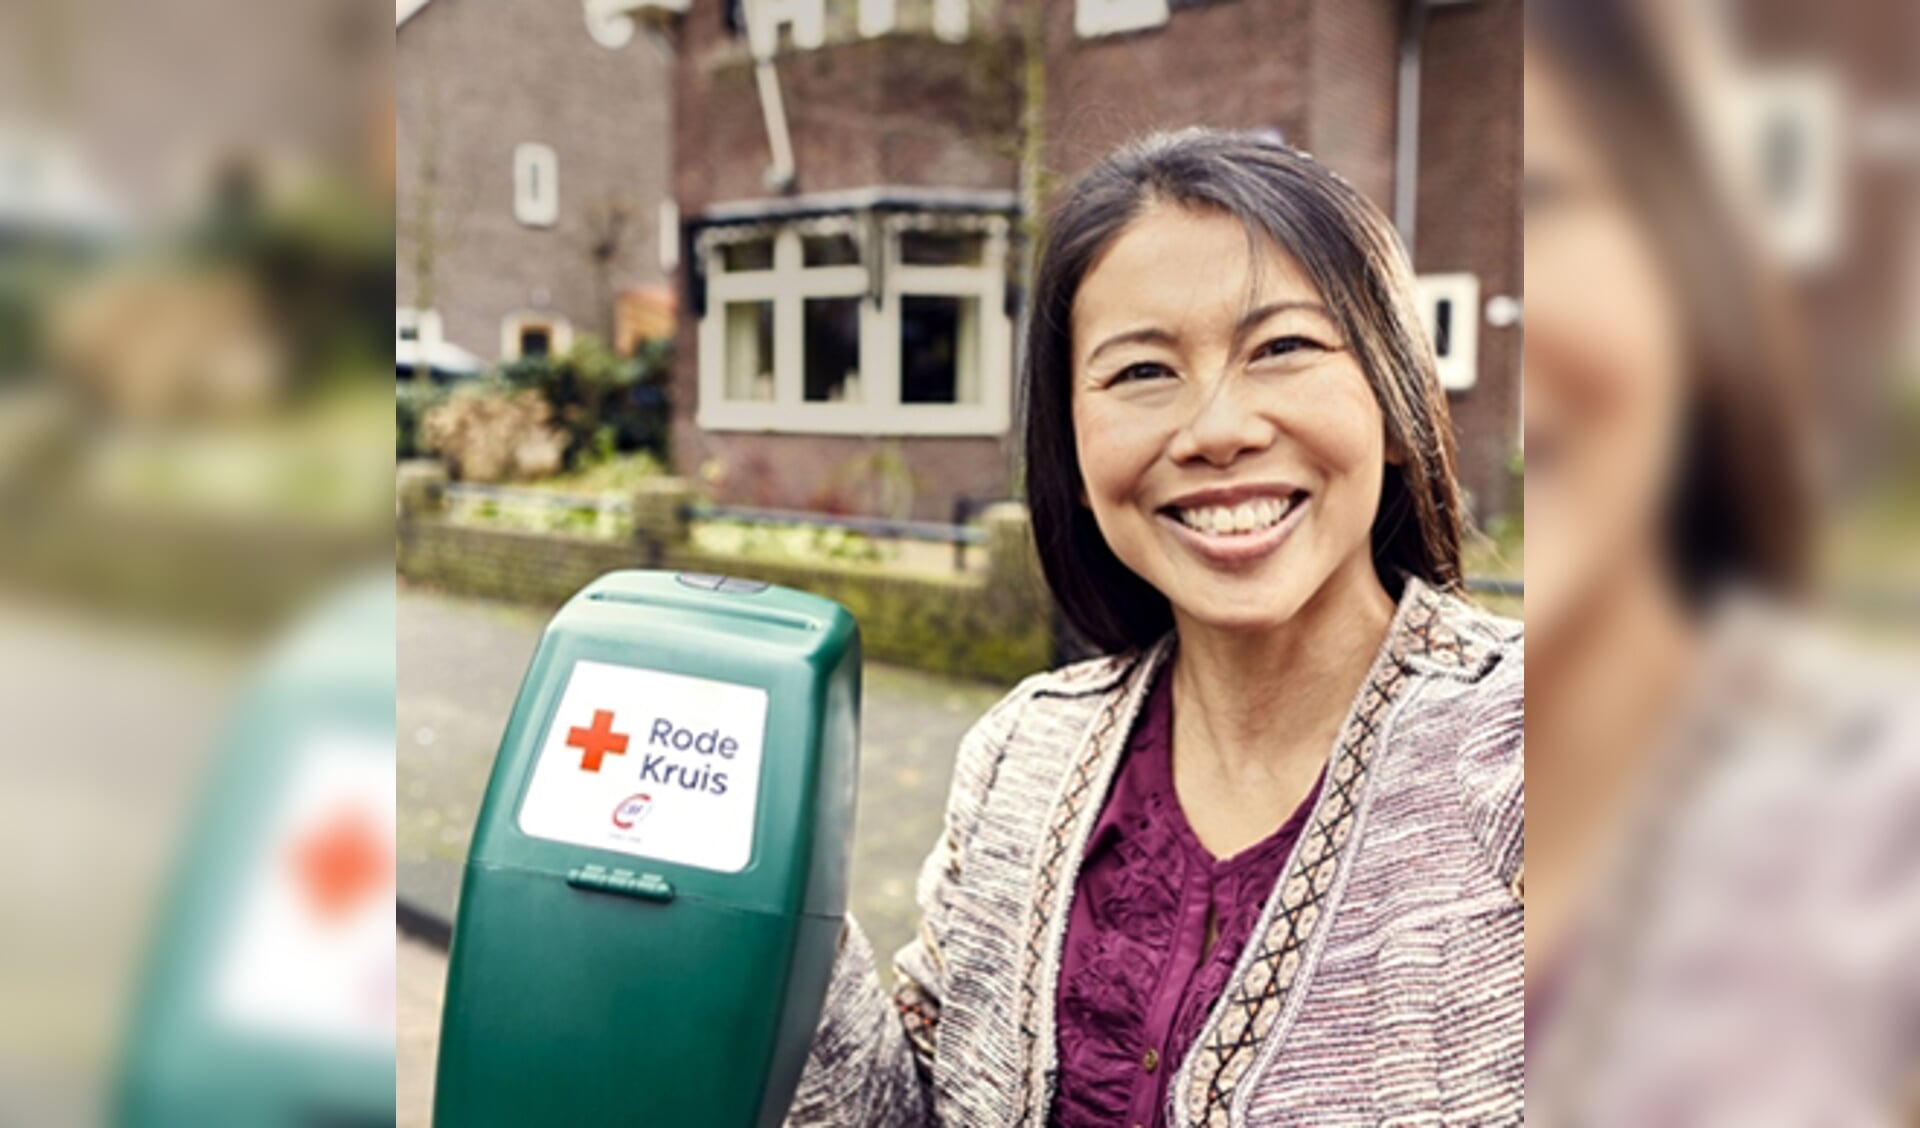 Deze week kunt u een collectant van het Rode Kruis aan de deur verwachten.